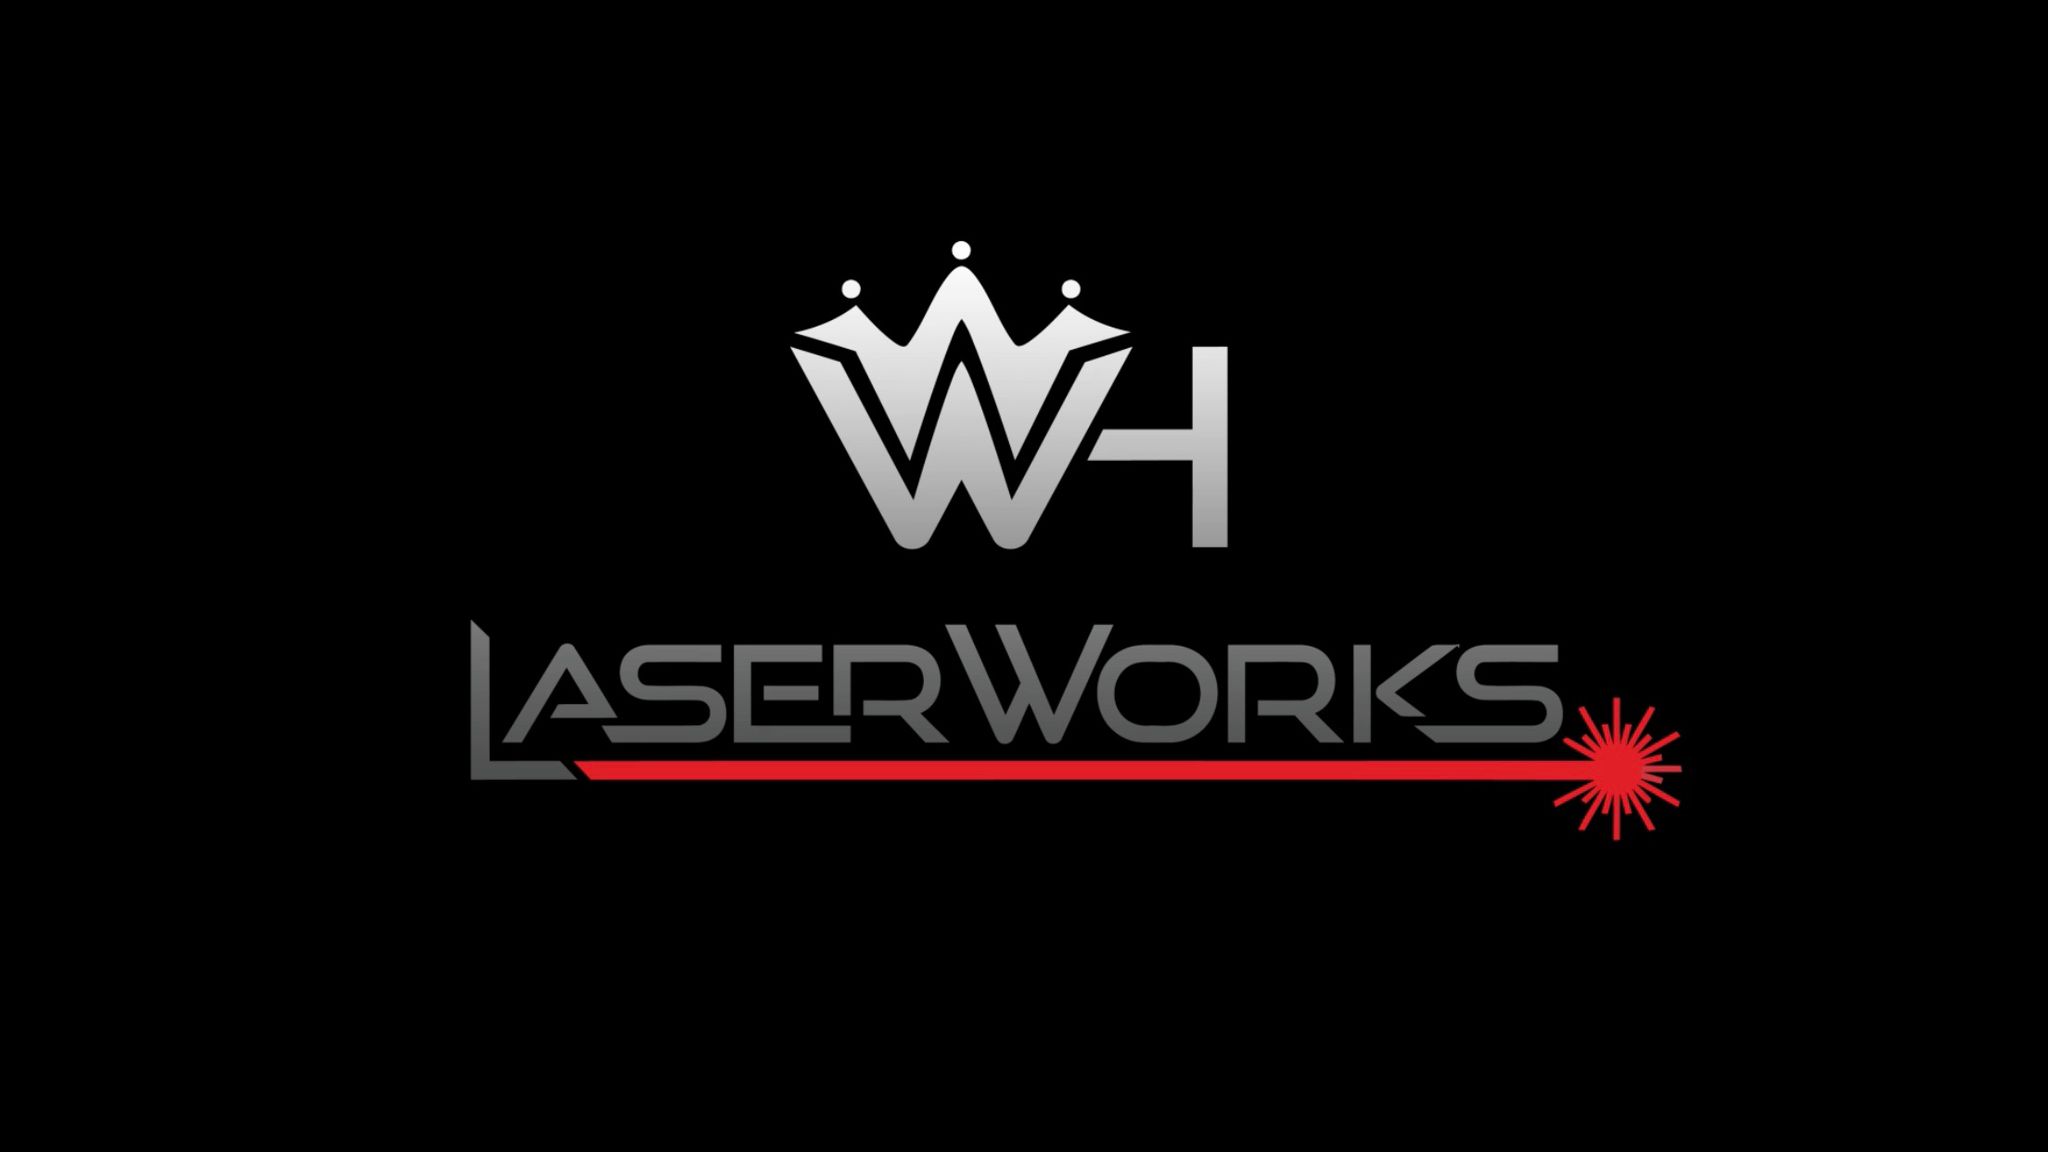 WH-Laserworks